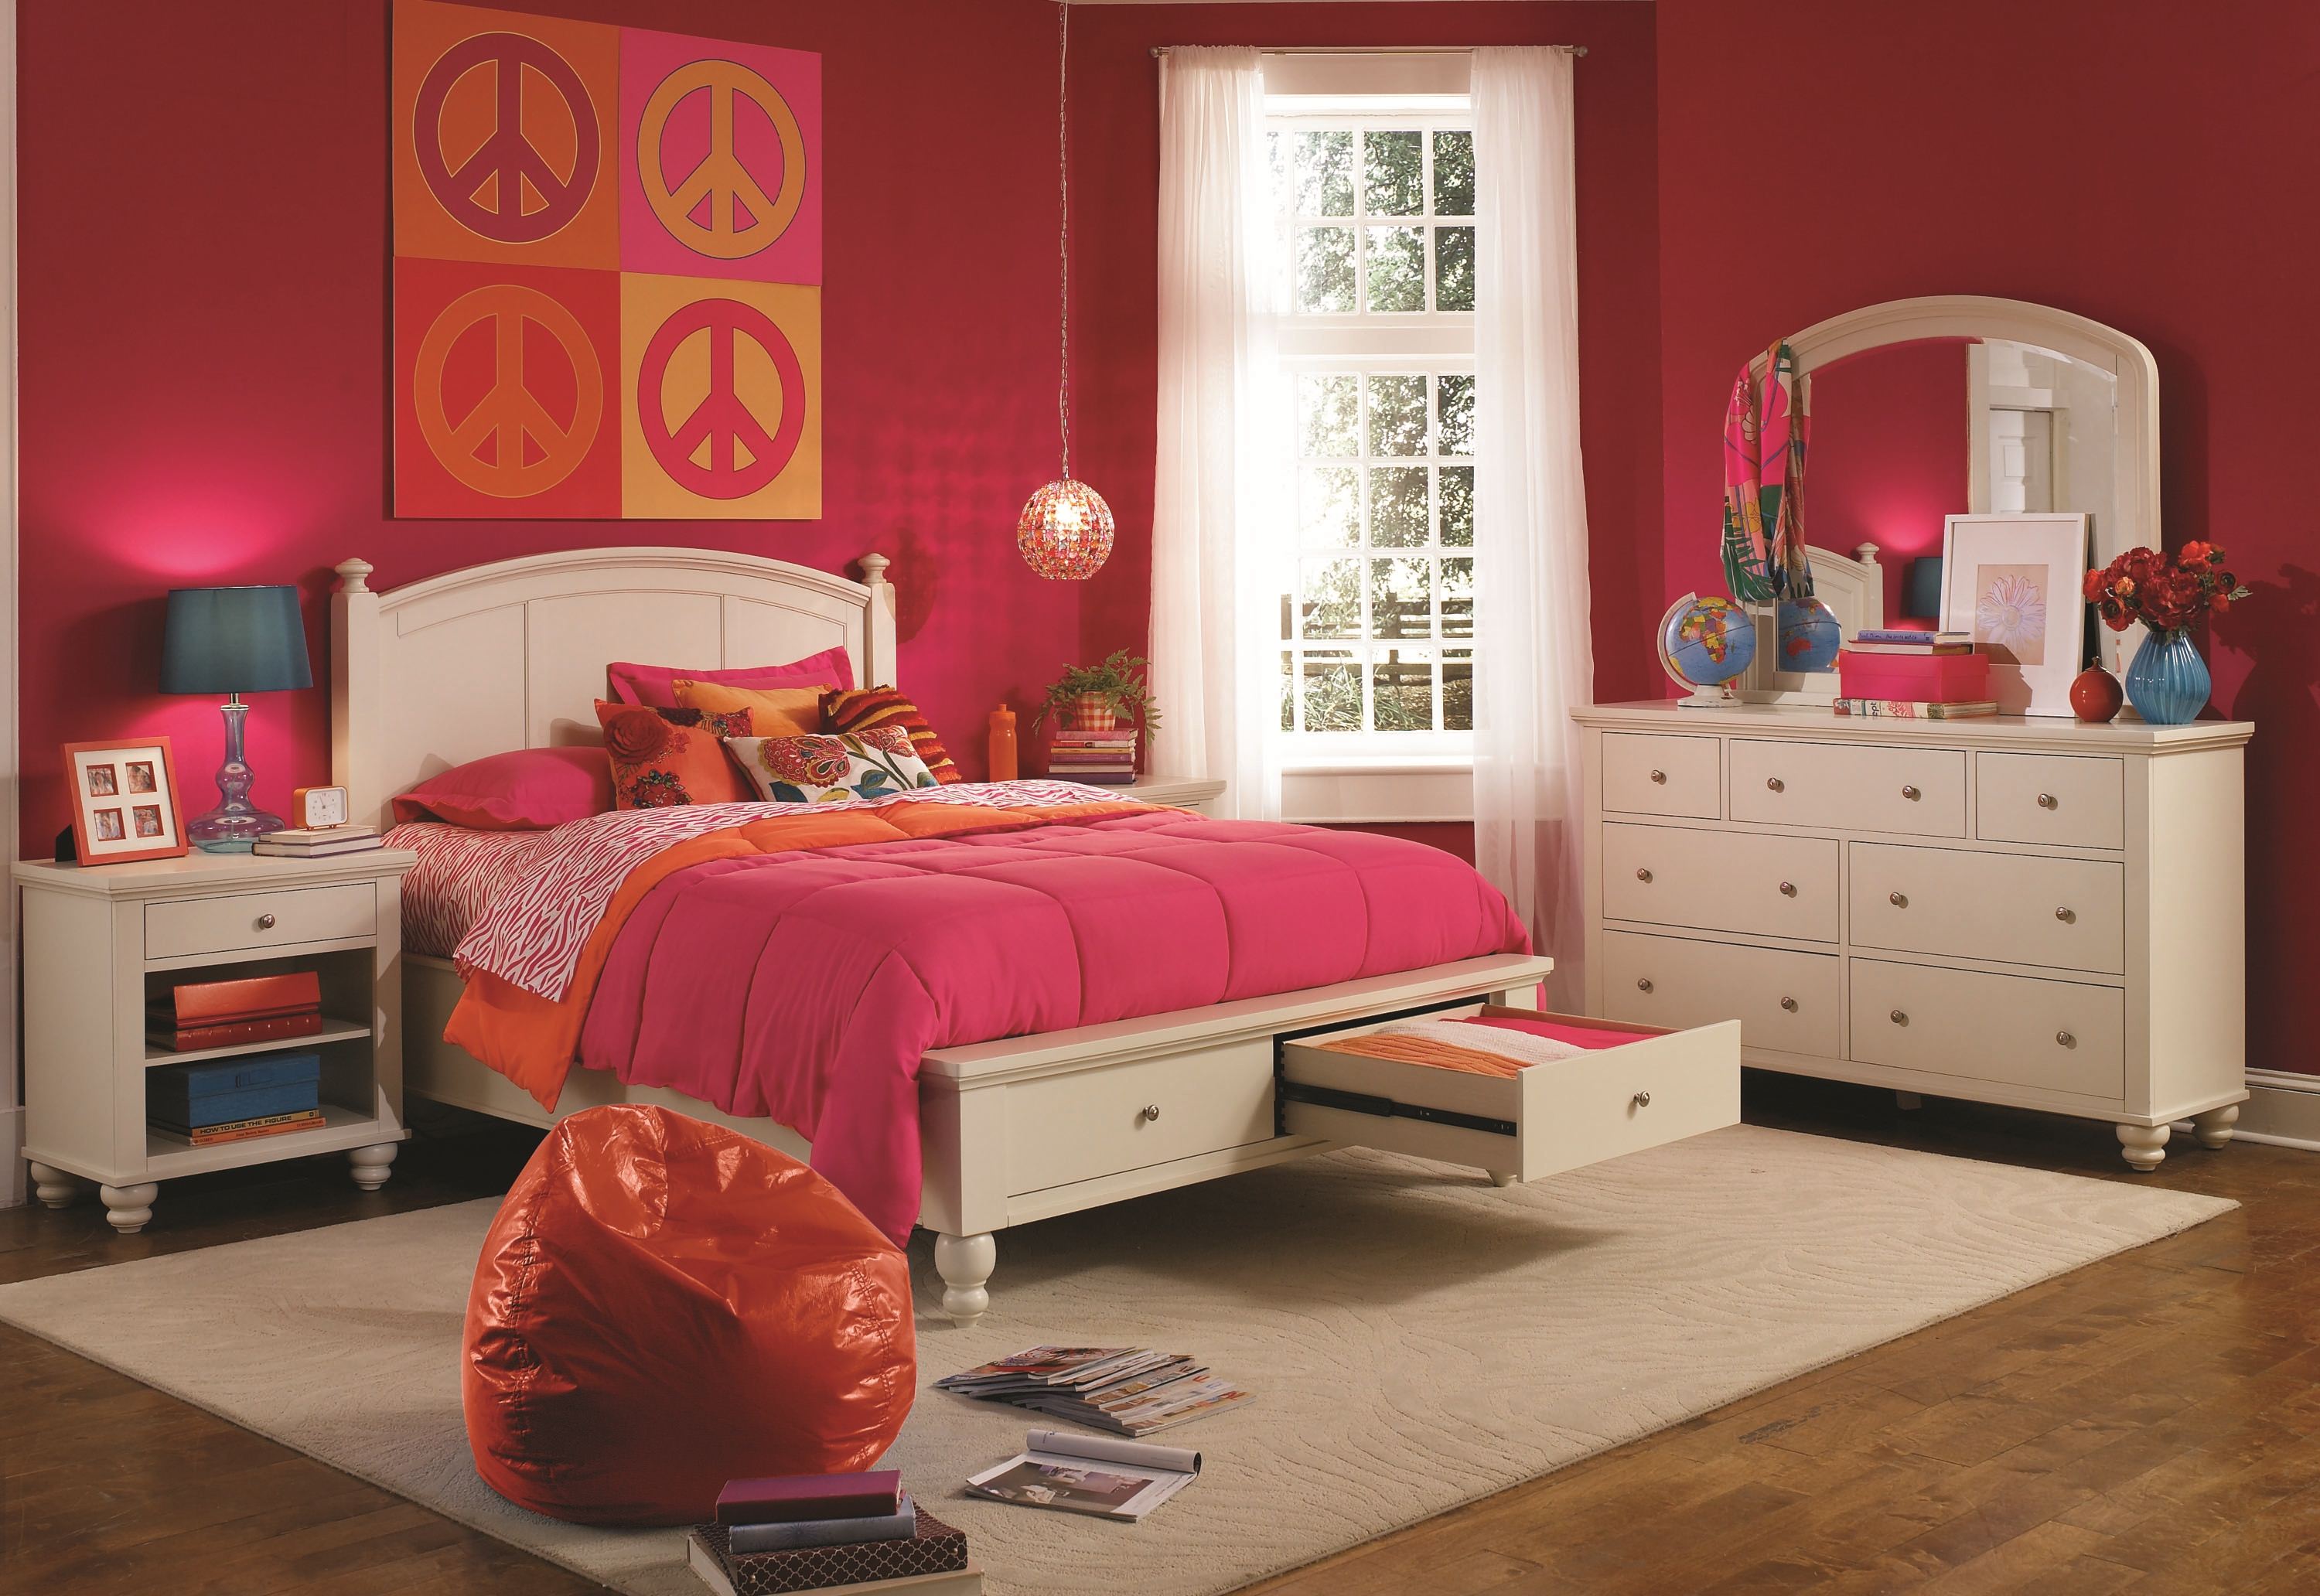 cambridge bedroom set aspen home furniture